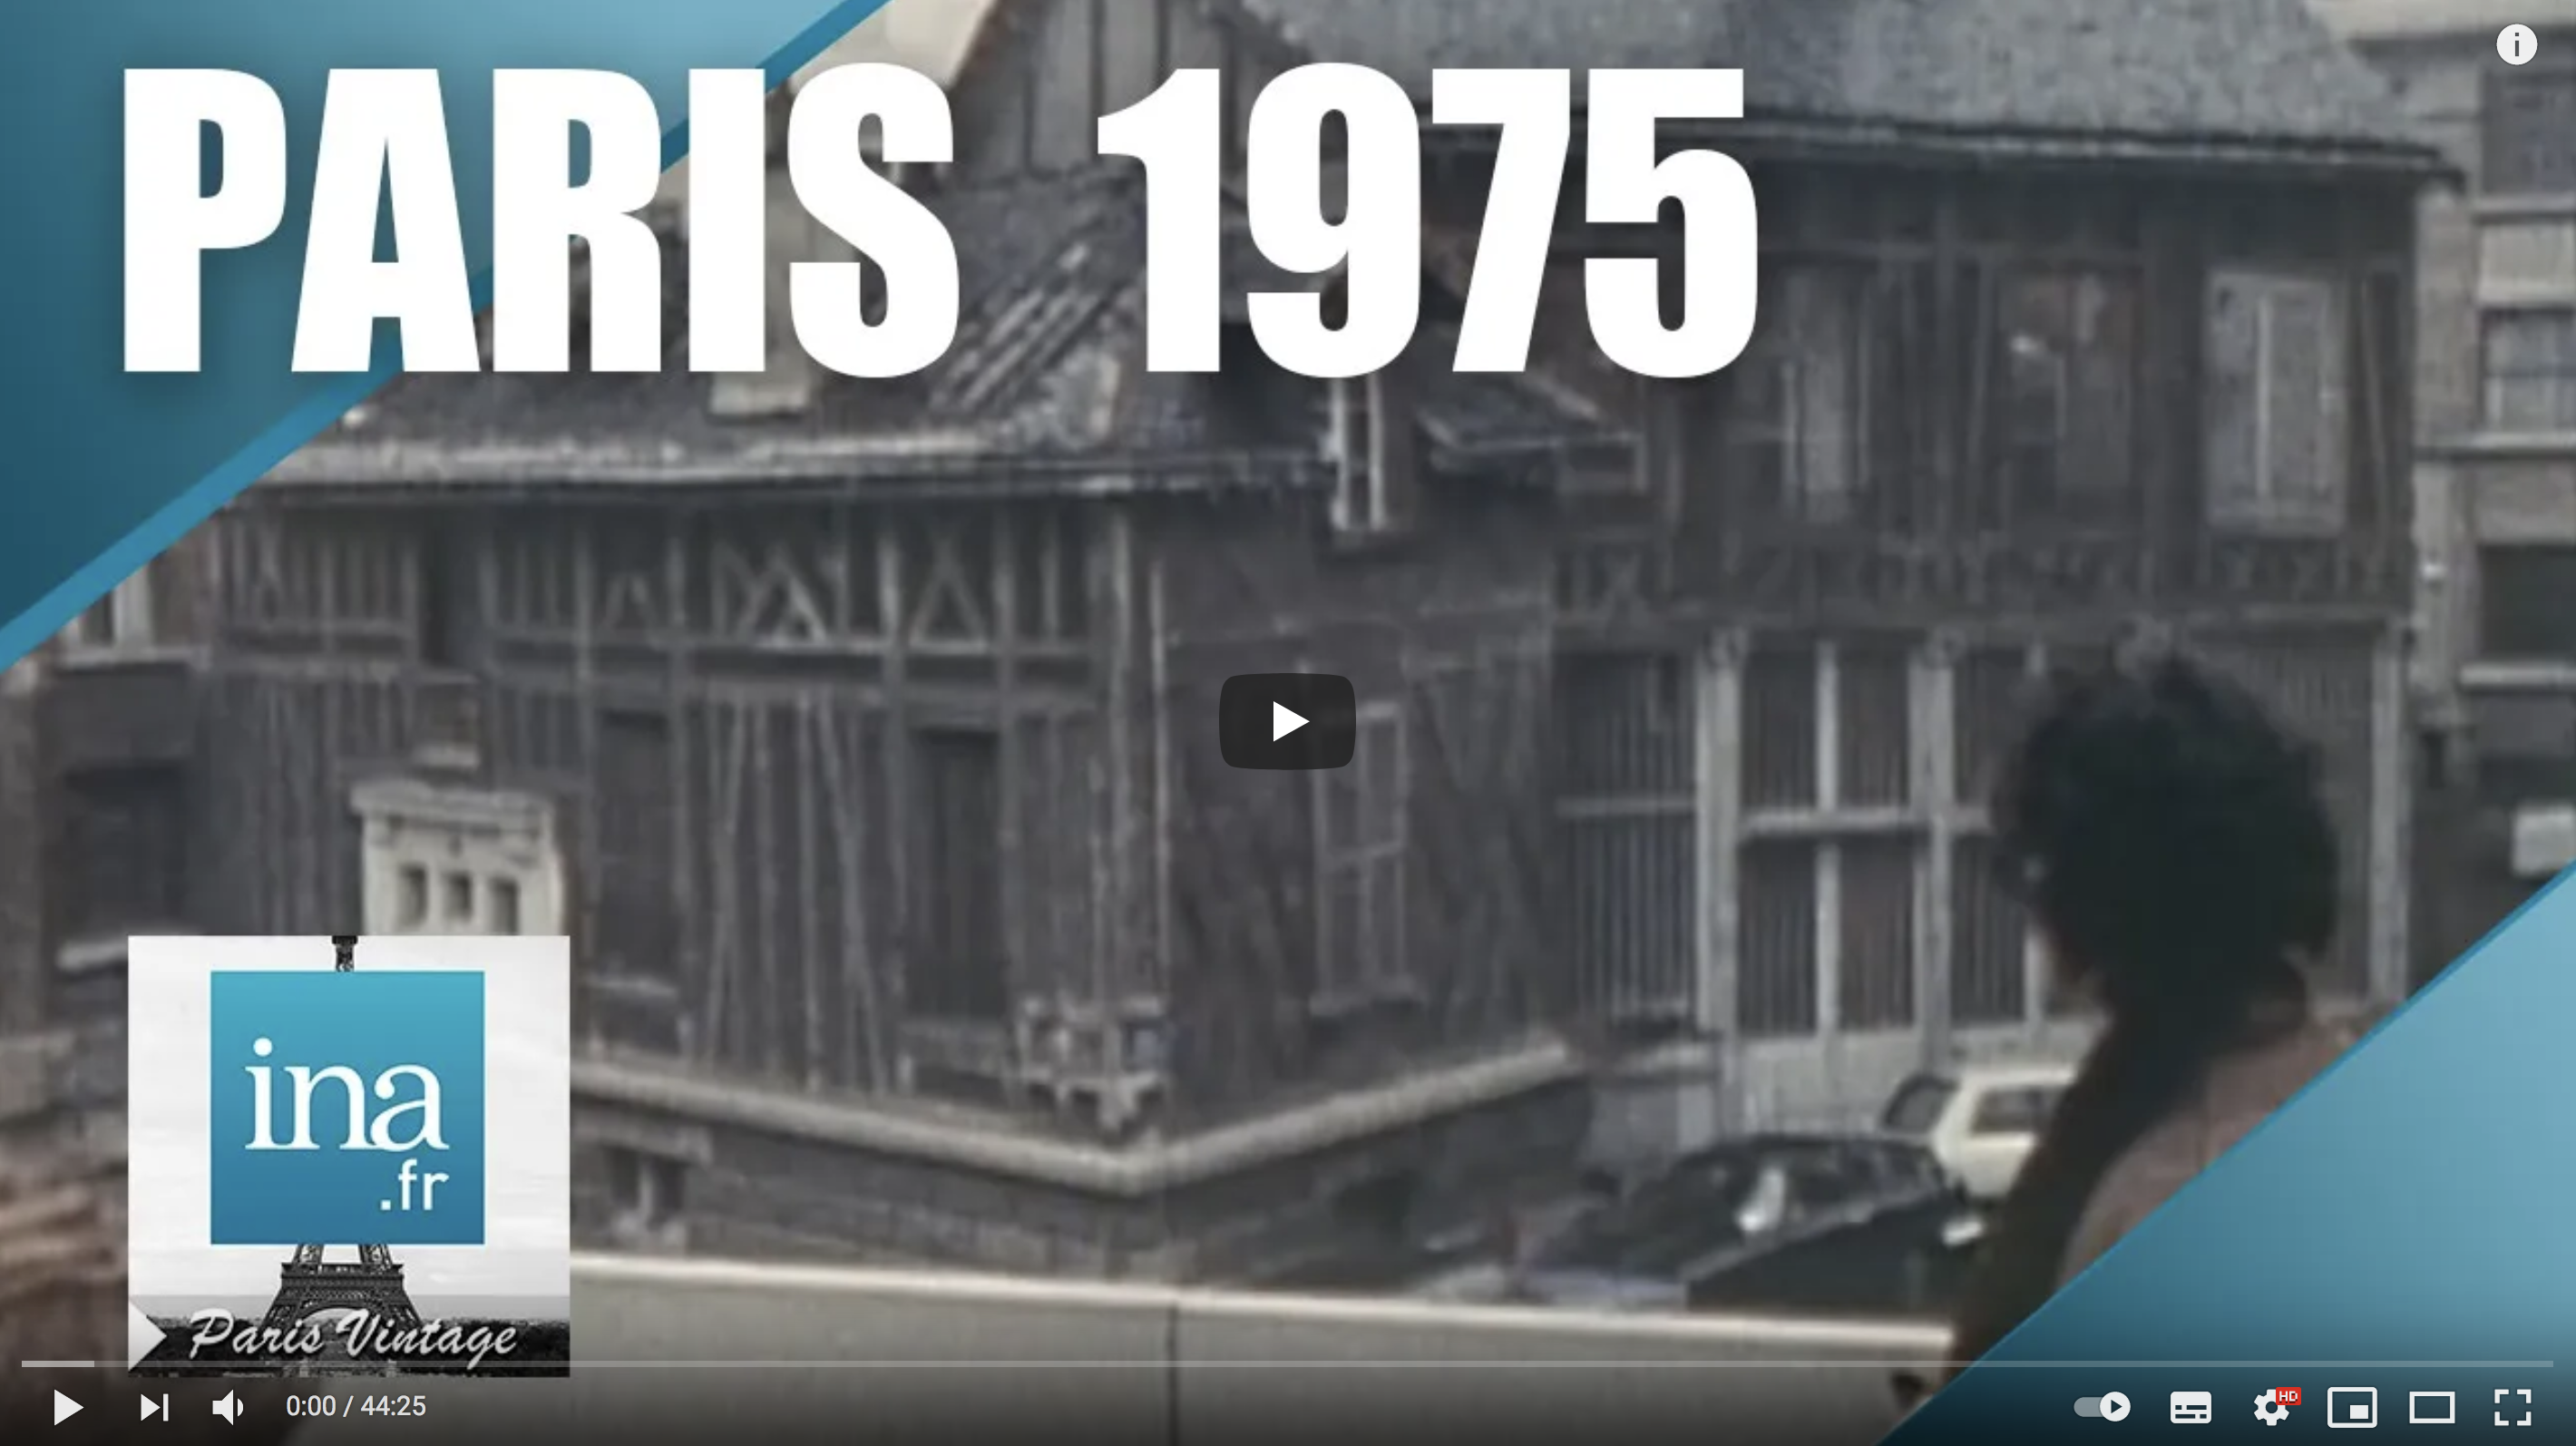 1975 : Le vieux Paris qui disparaît